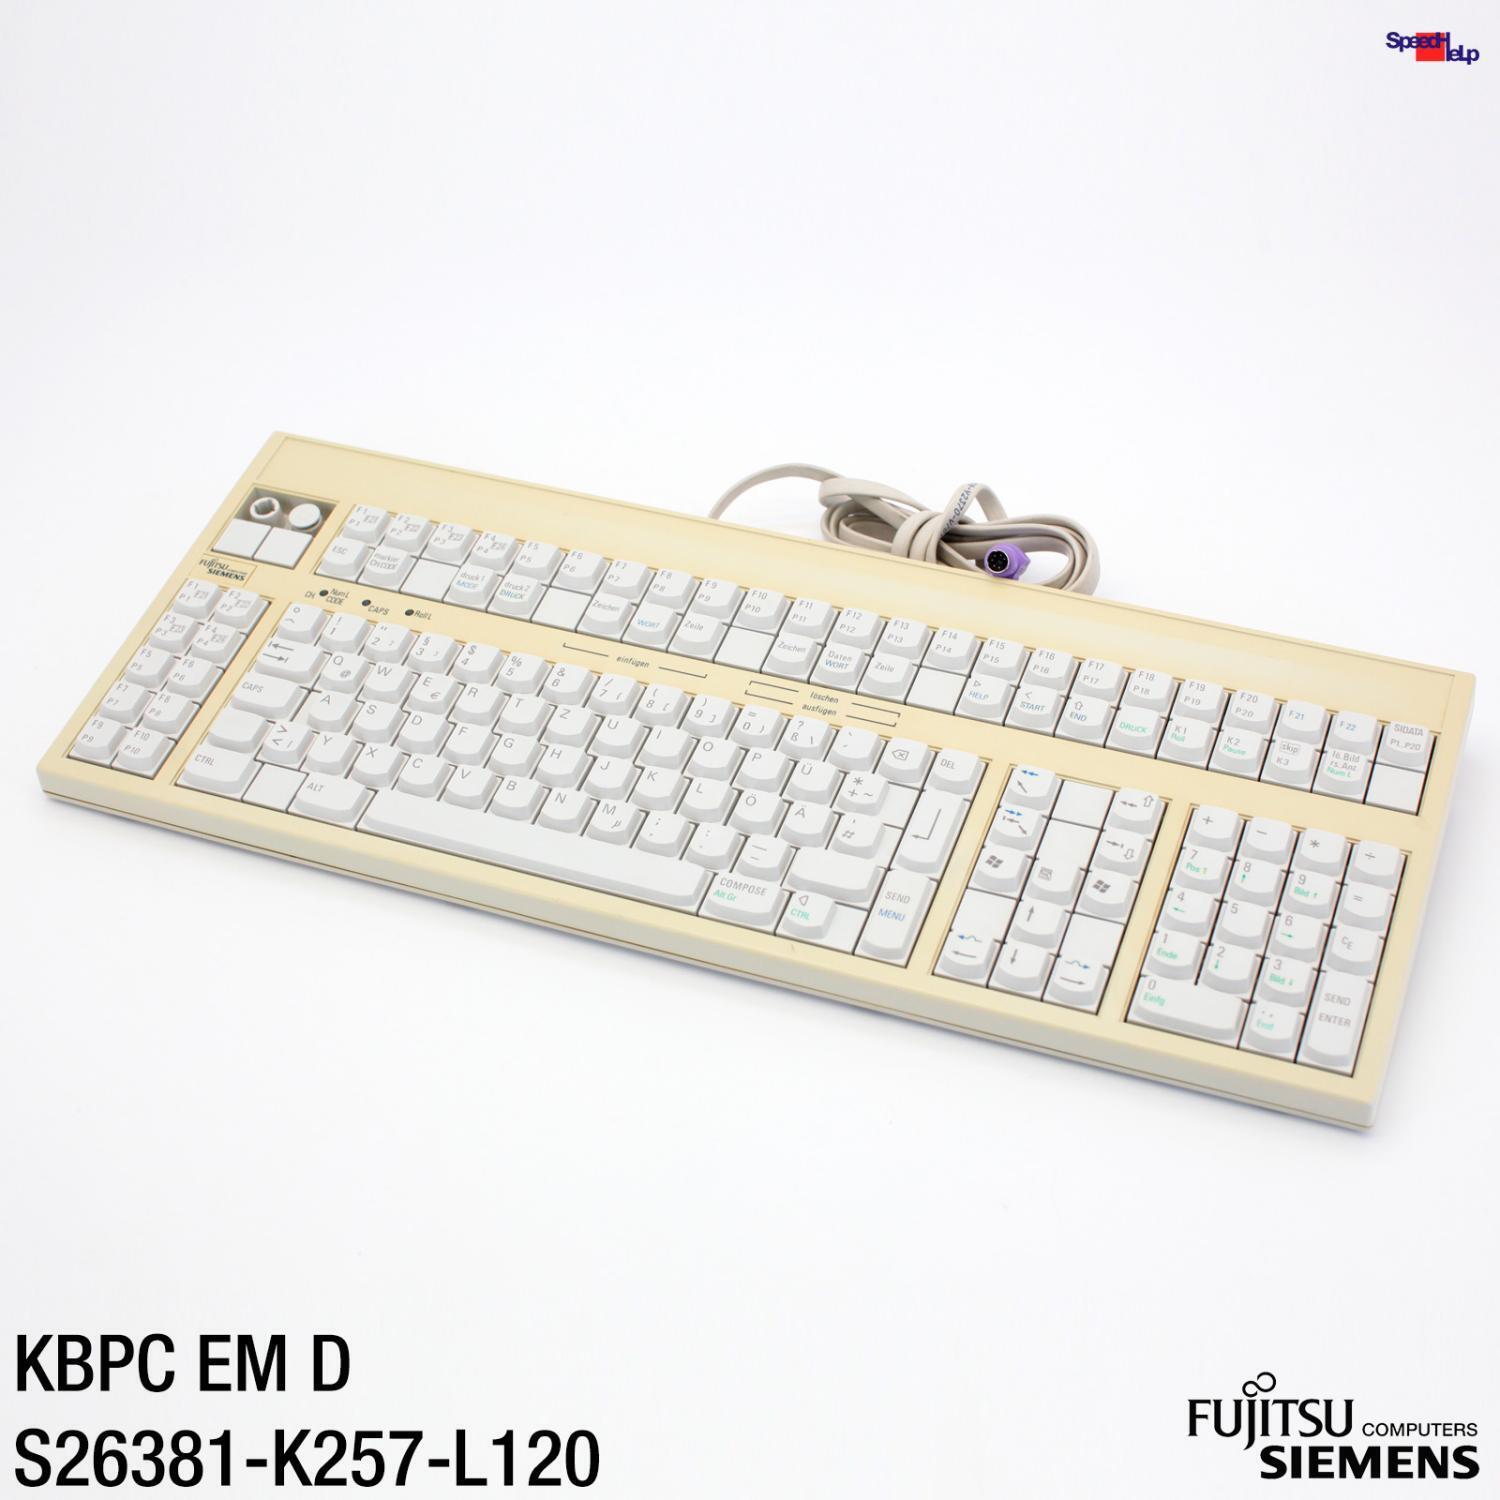 FSC Fujitsu Siemens Kbpc Em D S26381-K257-L120 Ps/2 Keyboard Qwertz